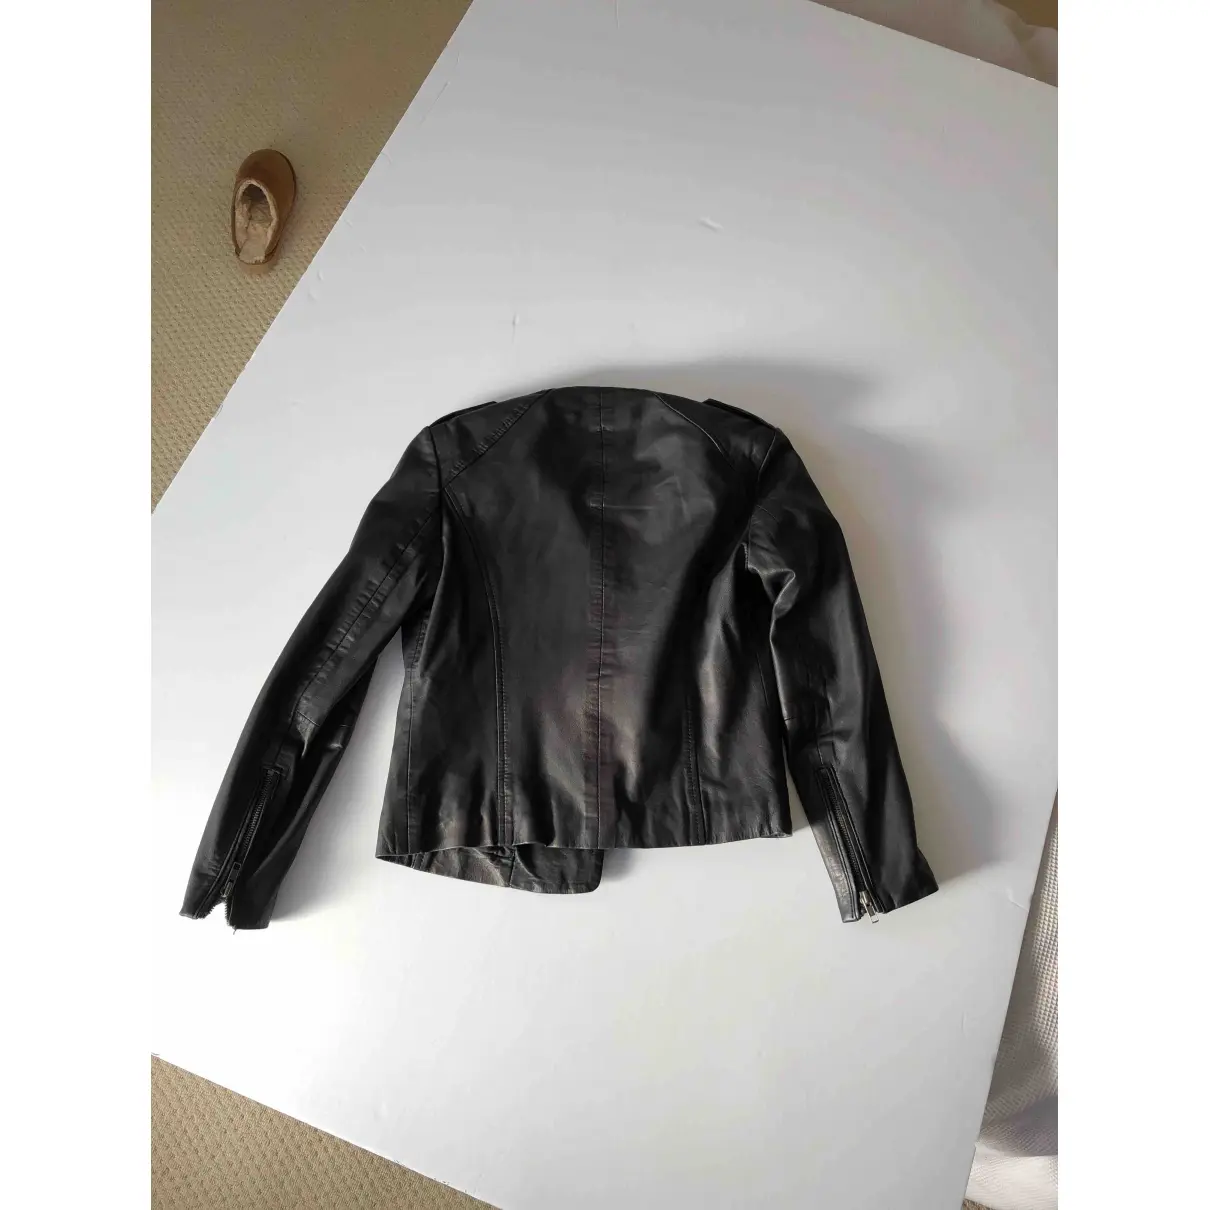 Buy Muubaa Leather jacket online